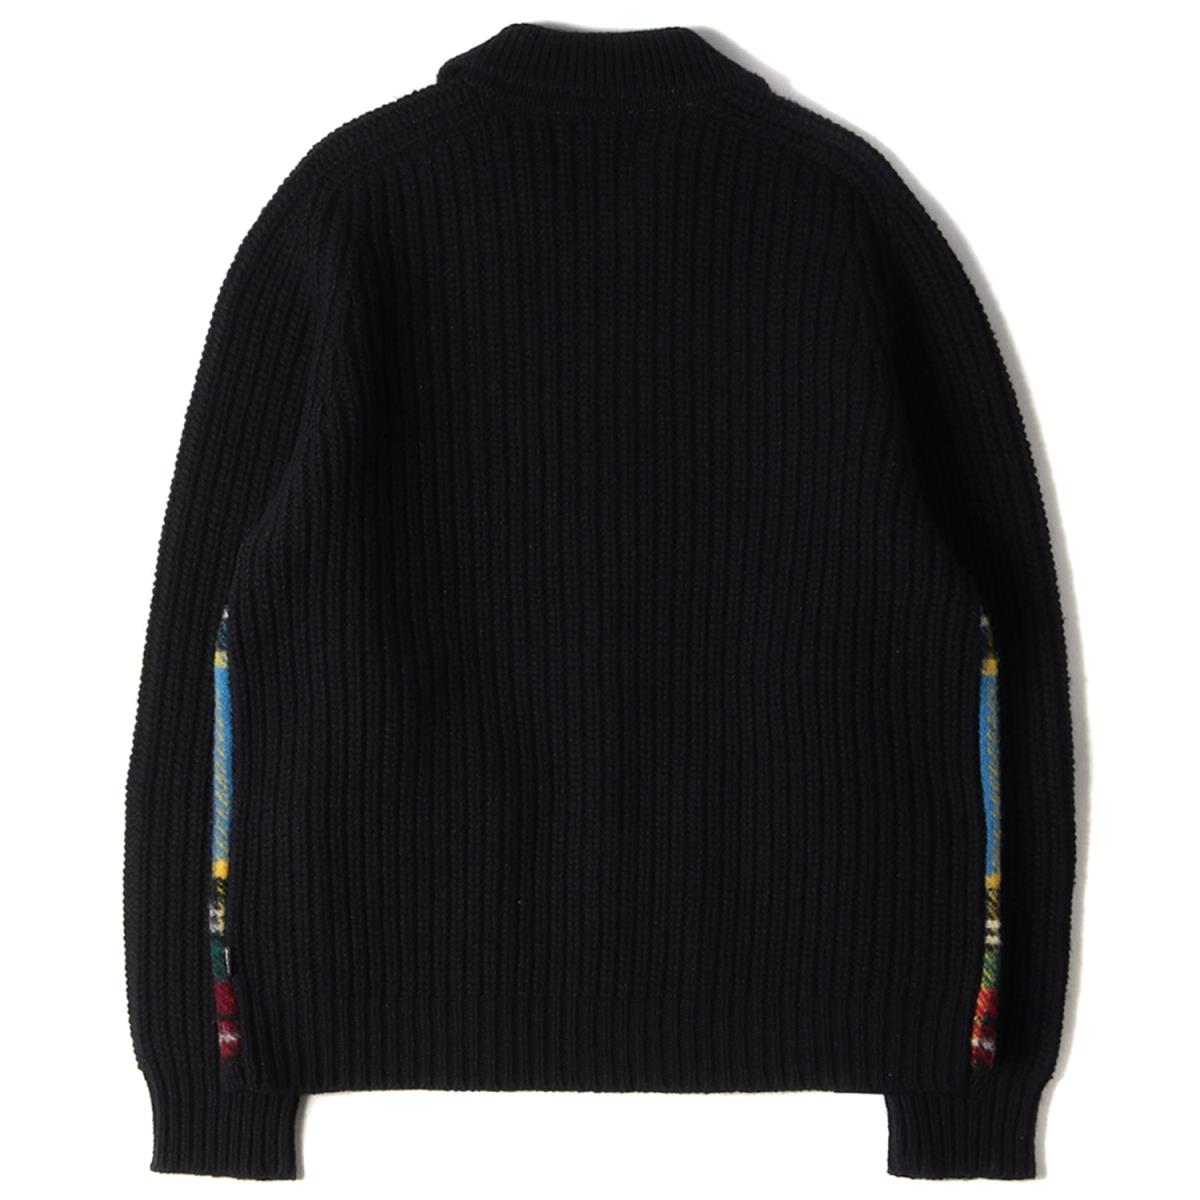 【楽天市場】Supreme シュプリーム セーター 18AW フロントチェック 柄 ジップ ニットセーター Plaid Front Zip Sweater ブラック M 【メンズ】【中古